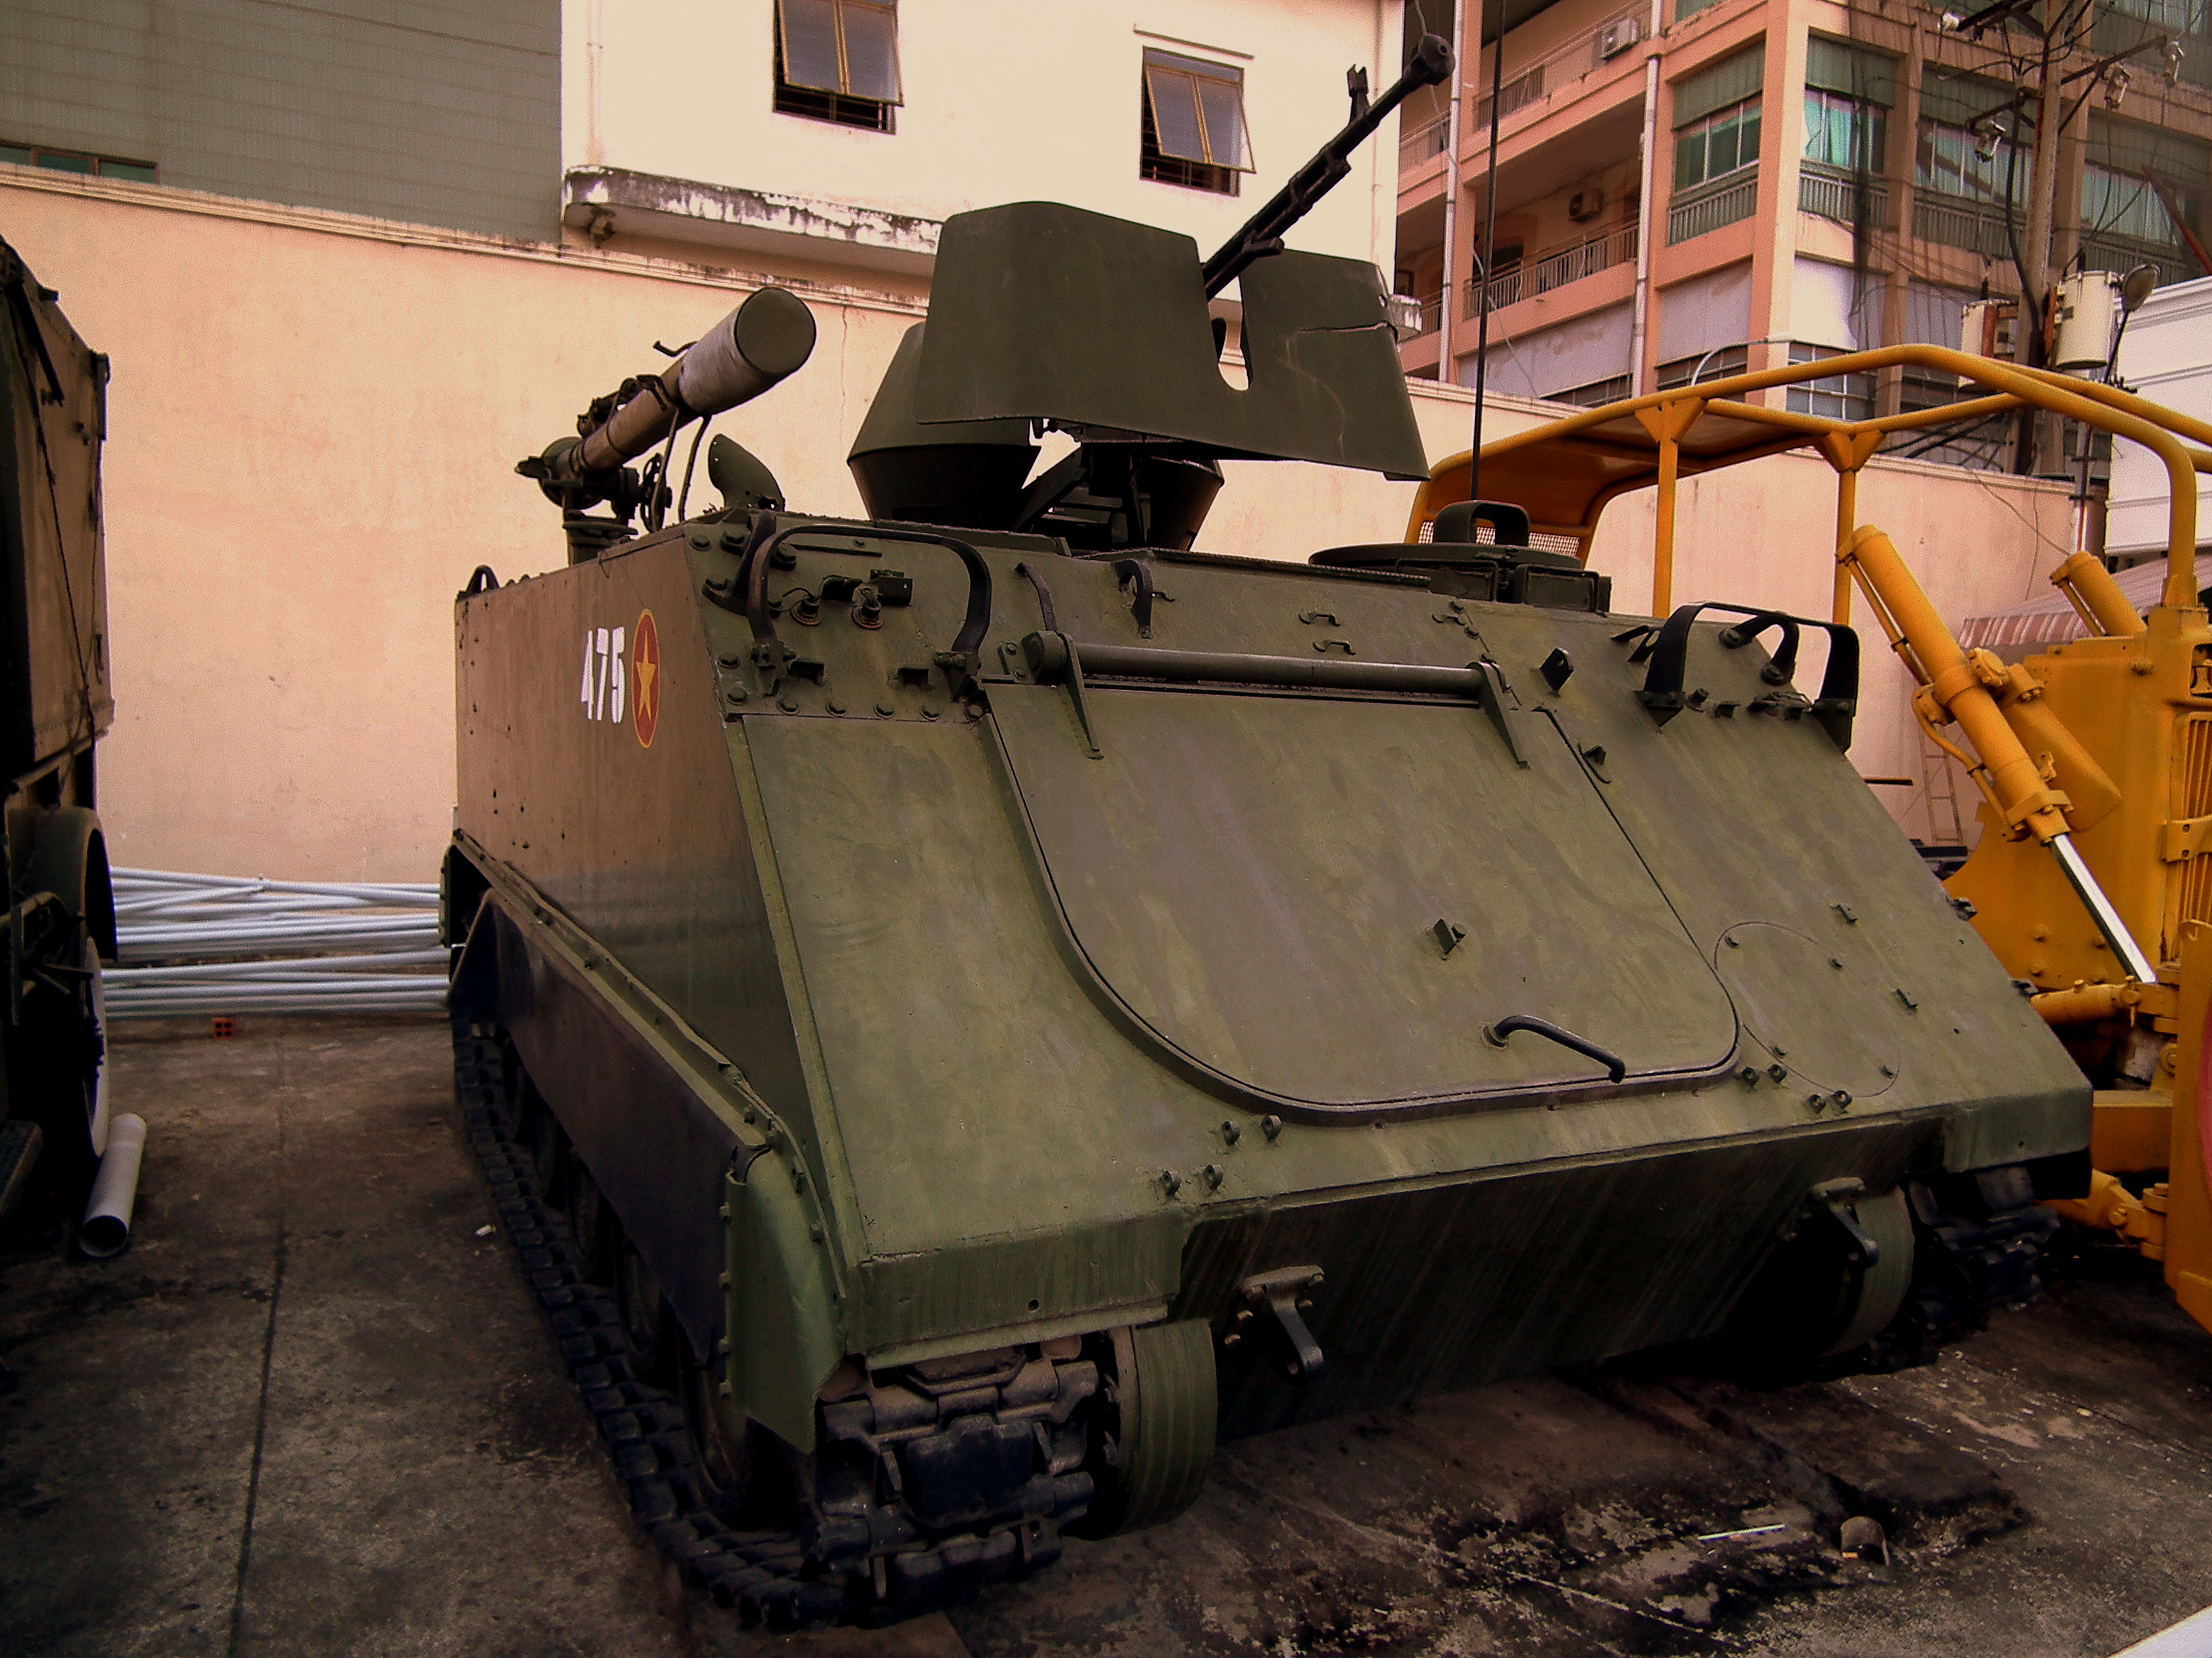 Cùng nhau tìm hiểu về chiếc xe tăng M-113 đầy chất lượng và hiệu suất cao trong hình ảnh!